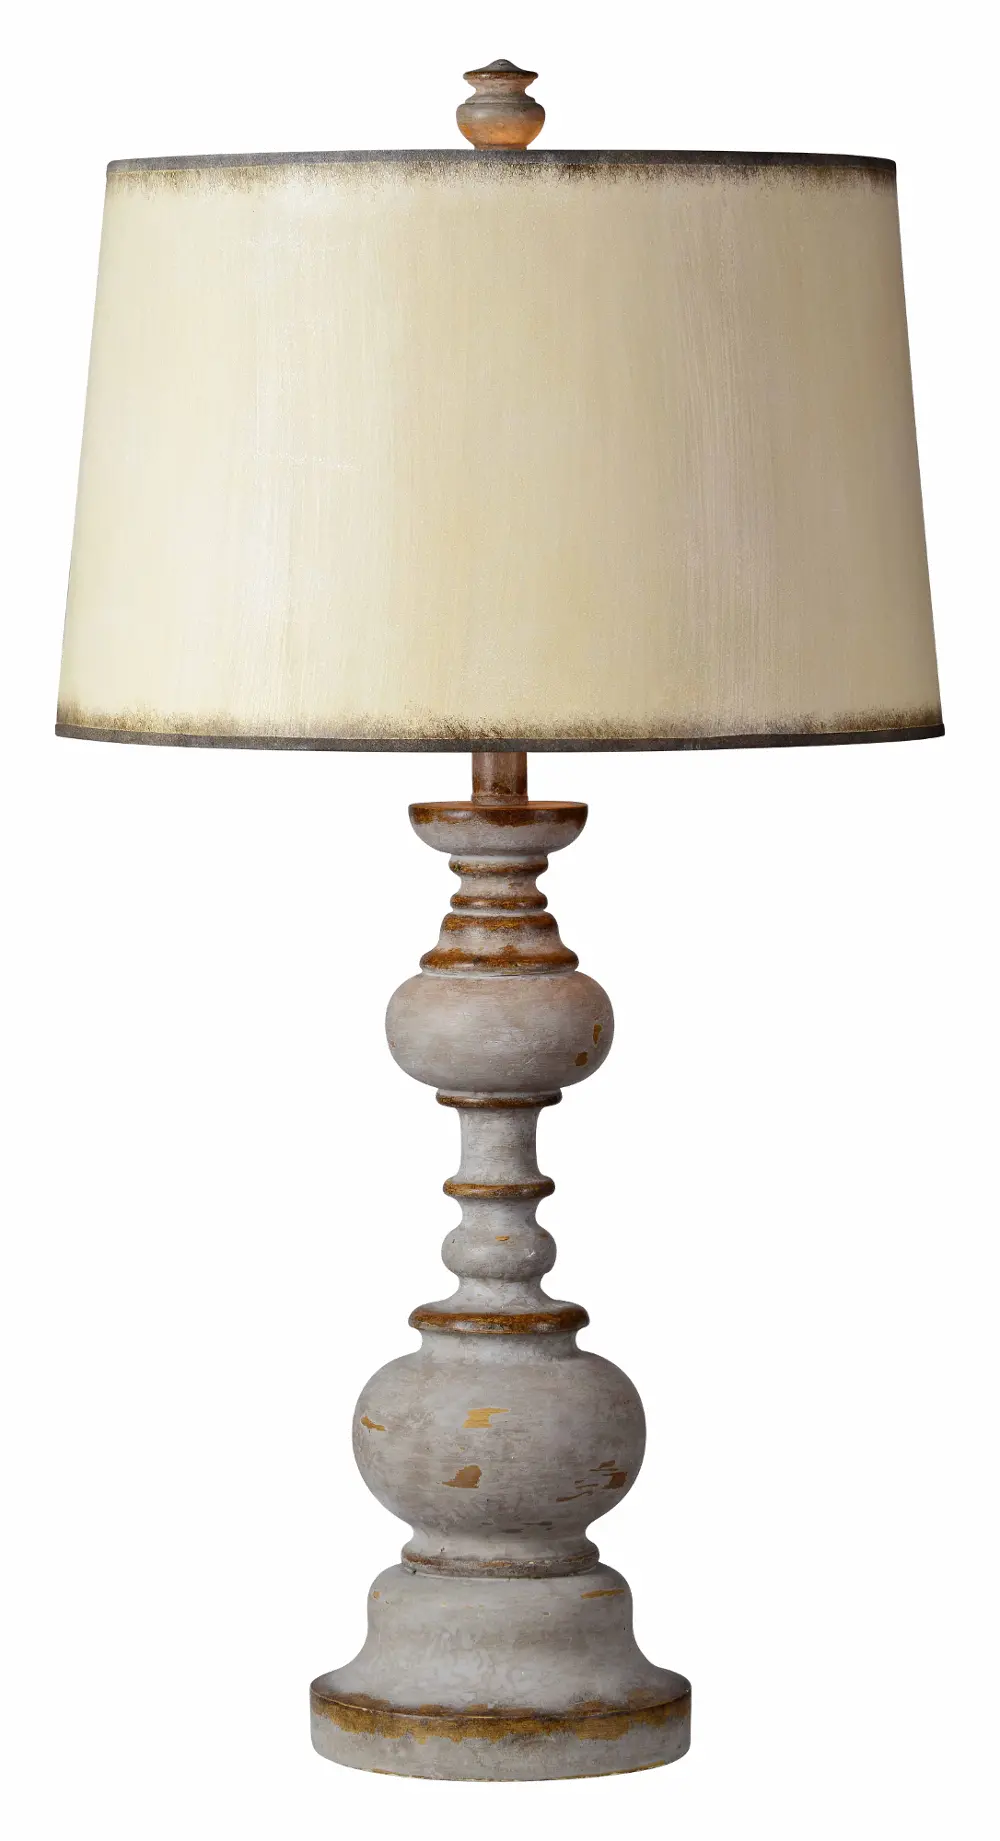 Distressed Wood Look Table Lamp - Nancy-1